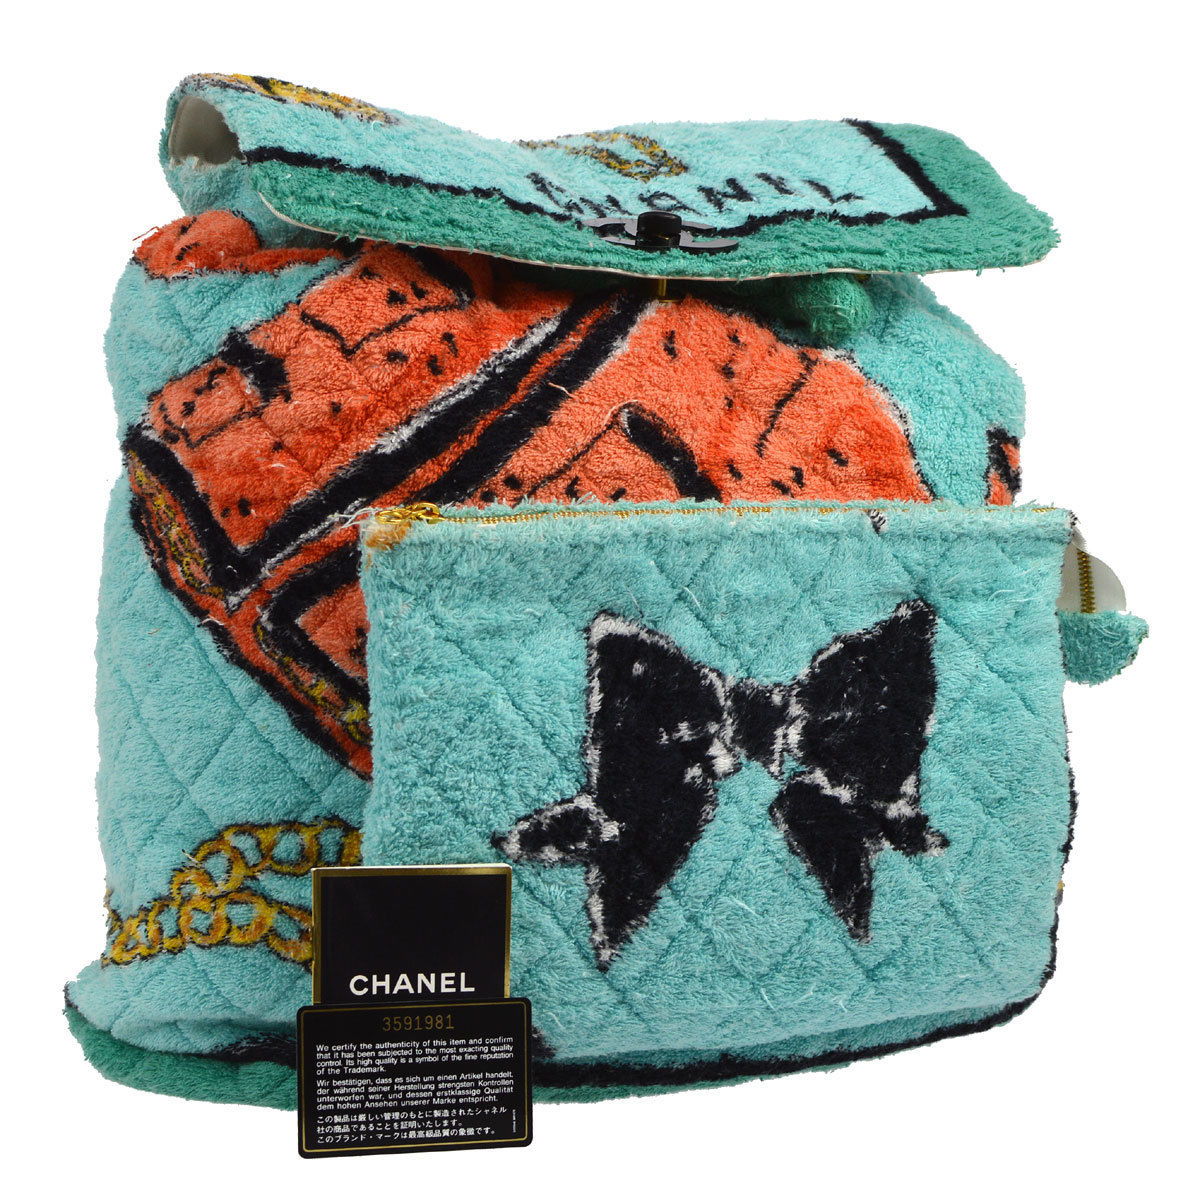 Les plus belles créations de sacs à dos Chanel trouvées sur eBay !